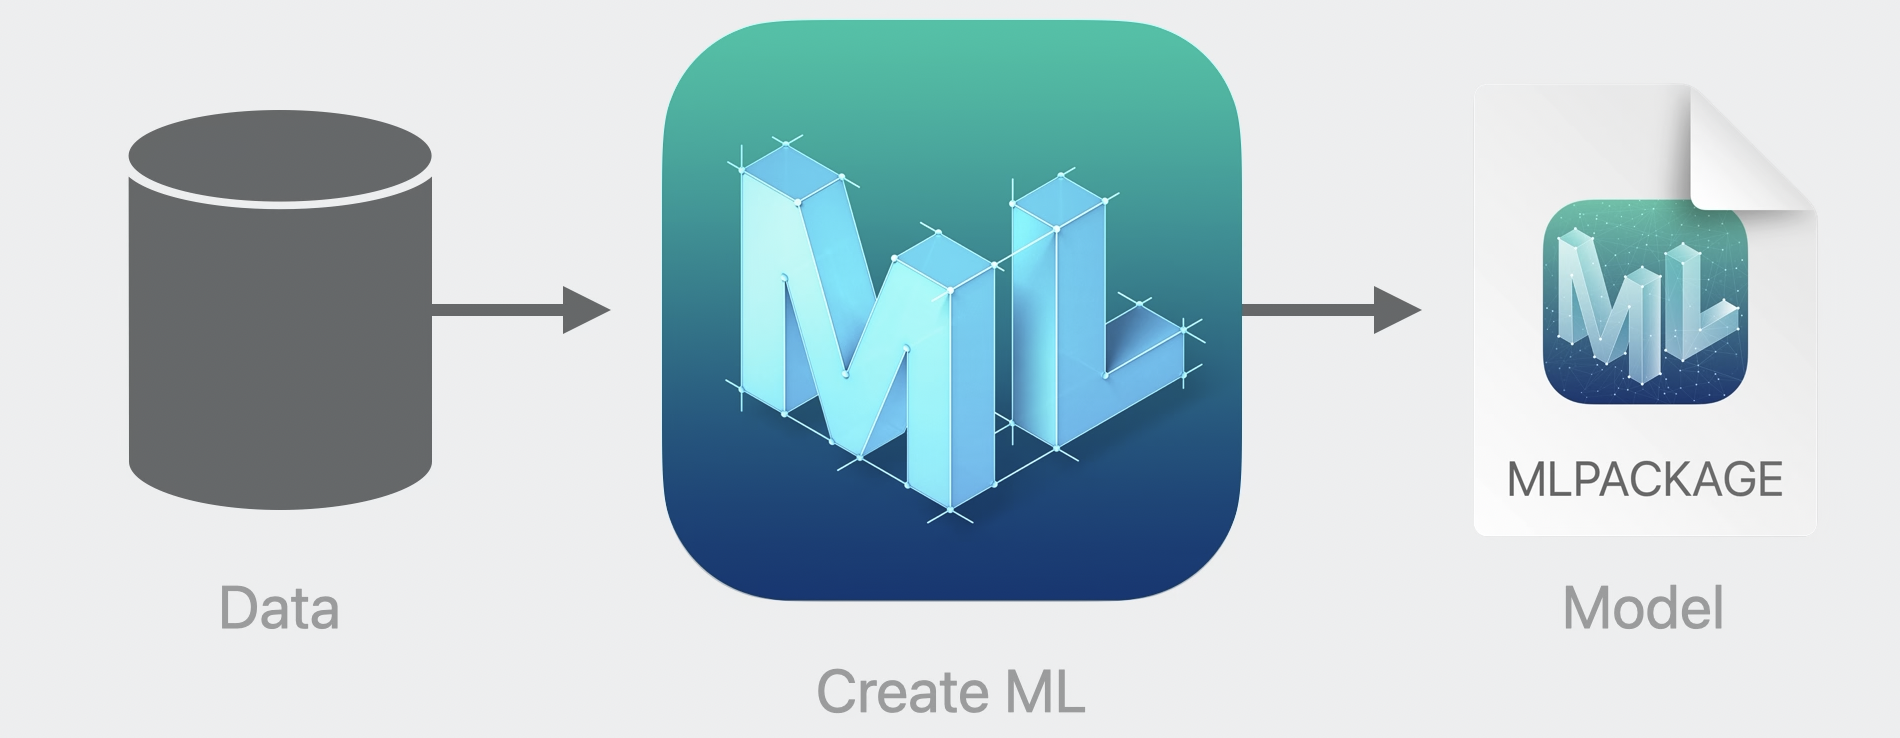 Create ML tool